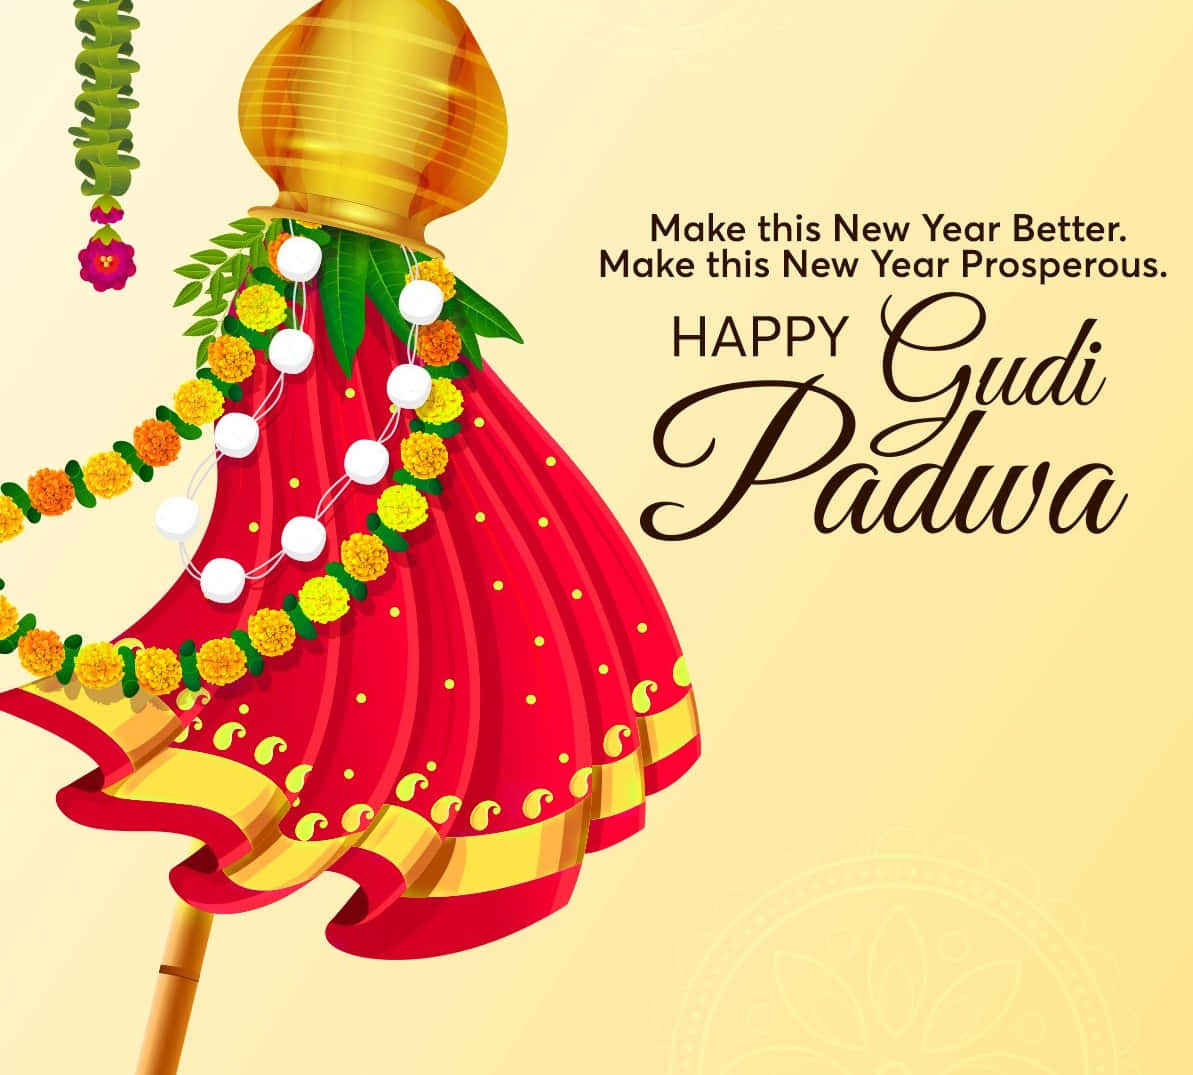 Feiernsie Gudi Padwa Mit Freude Und Glückseligkeit